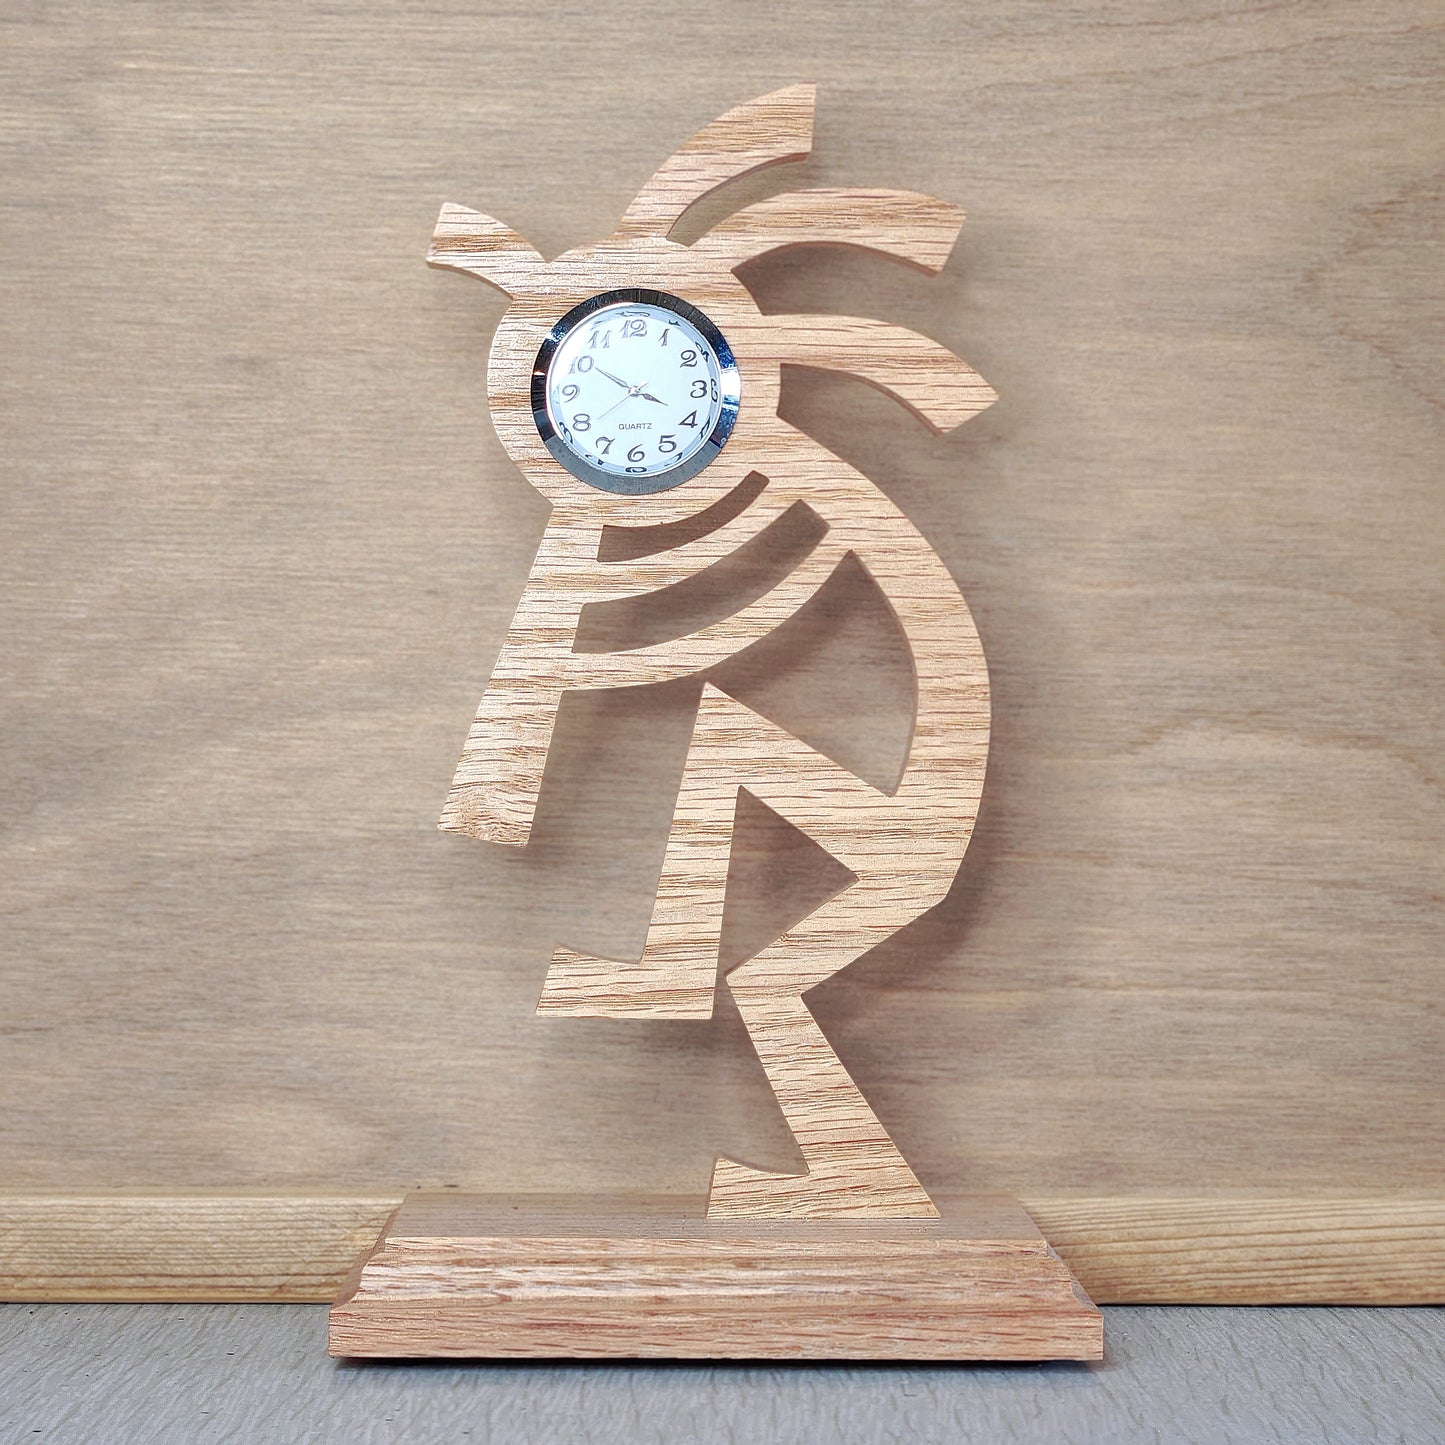 Wooden Clocks - Variety